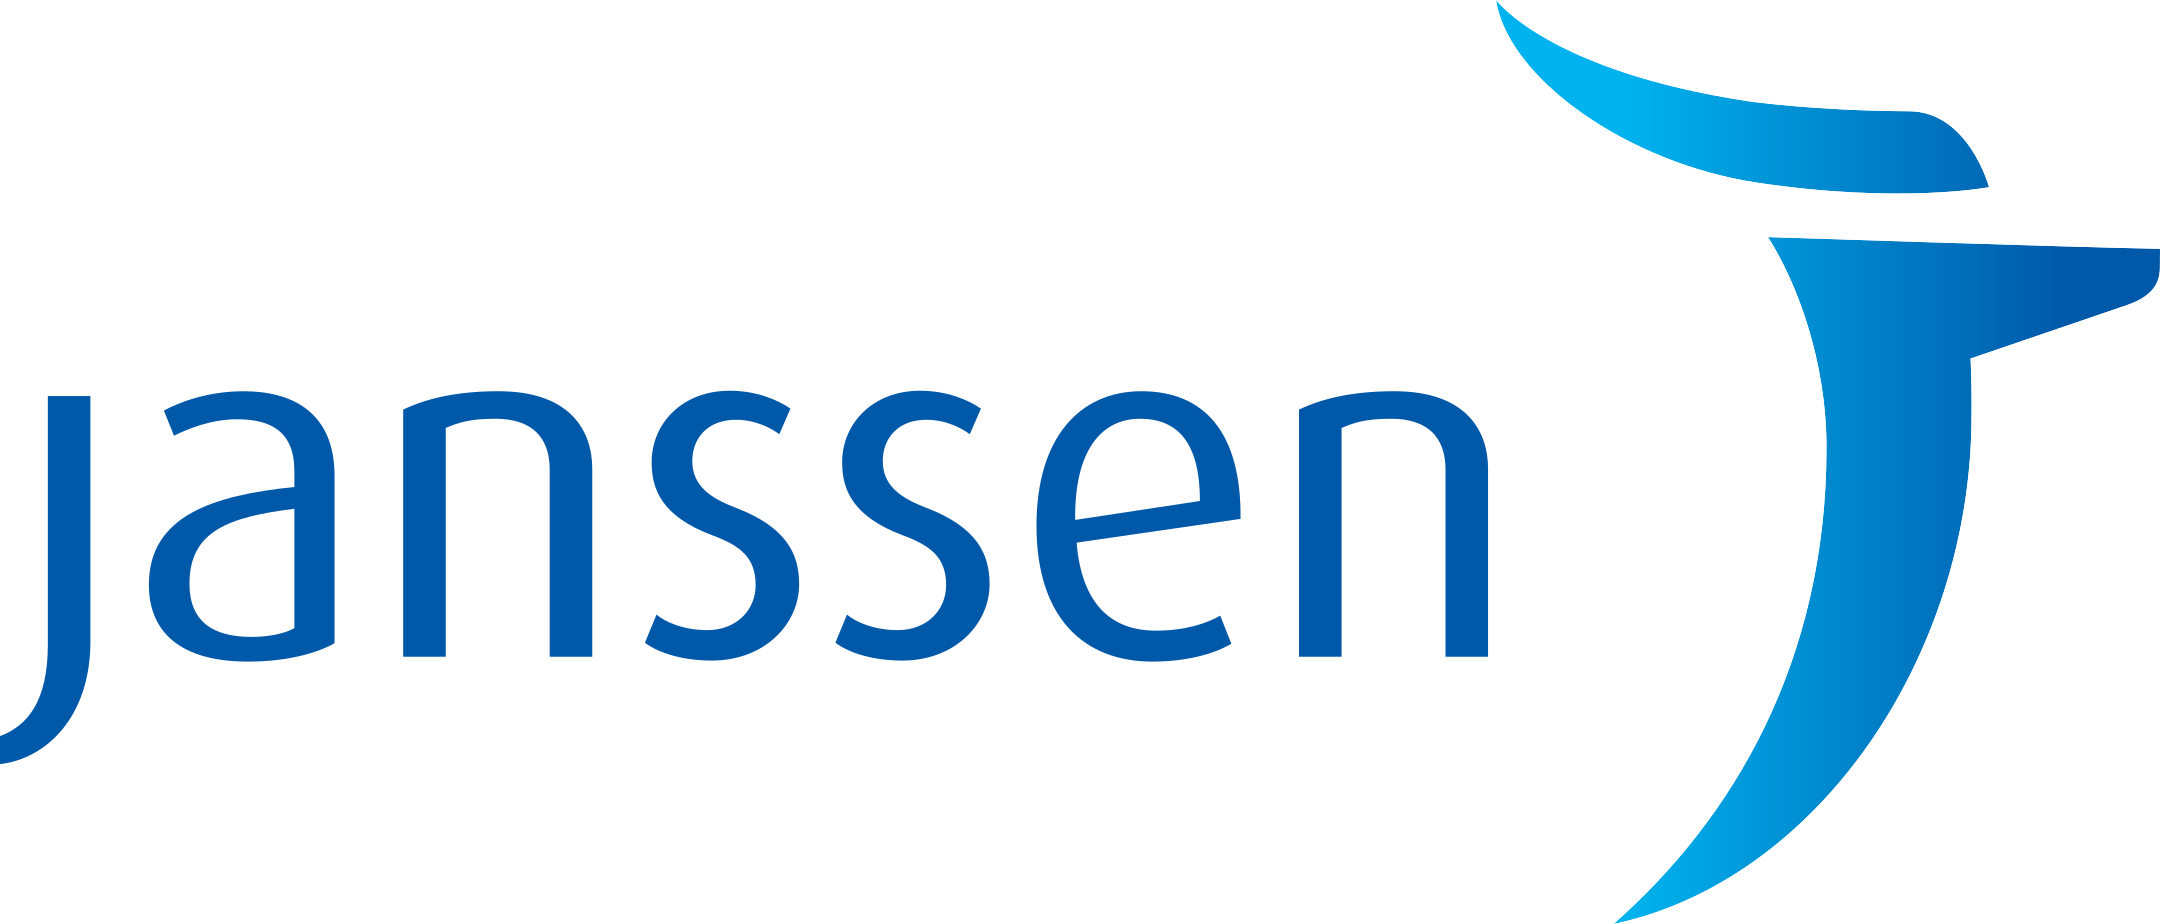 janssen logo 1 - Janssen Logo